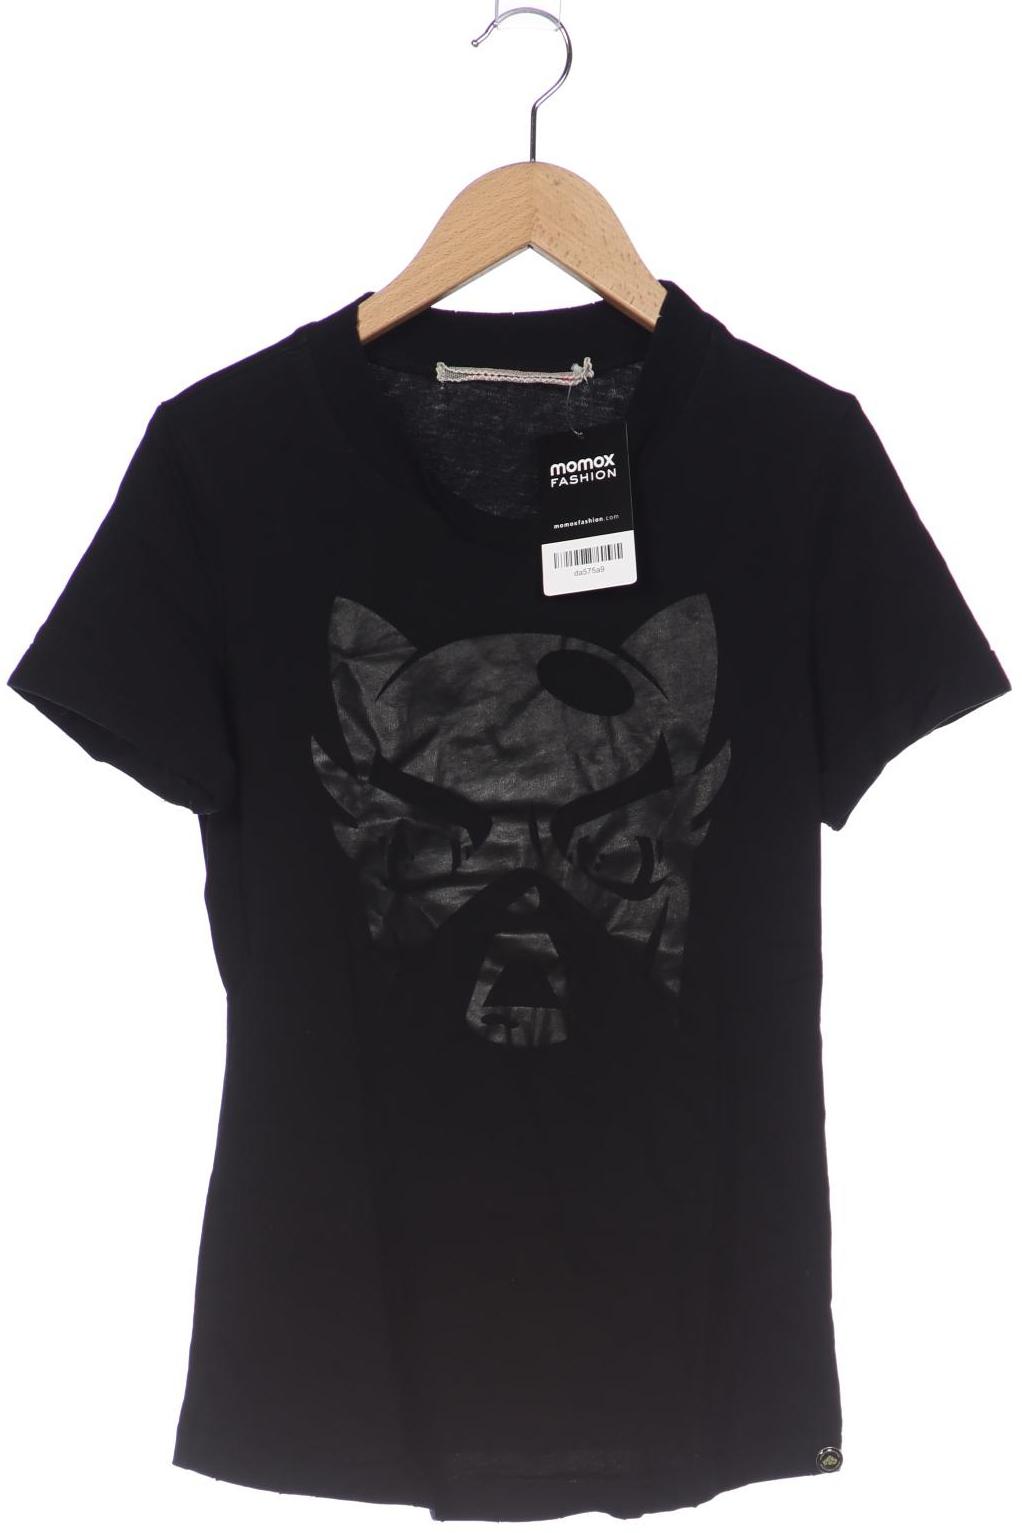 Fornarina Damen T-Shirt, schwarz, Gr. 36 von Fornarina